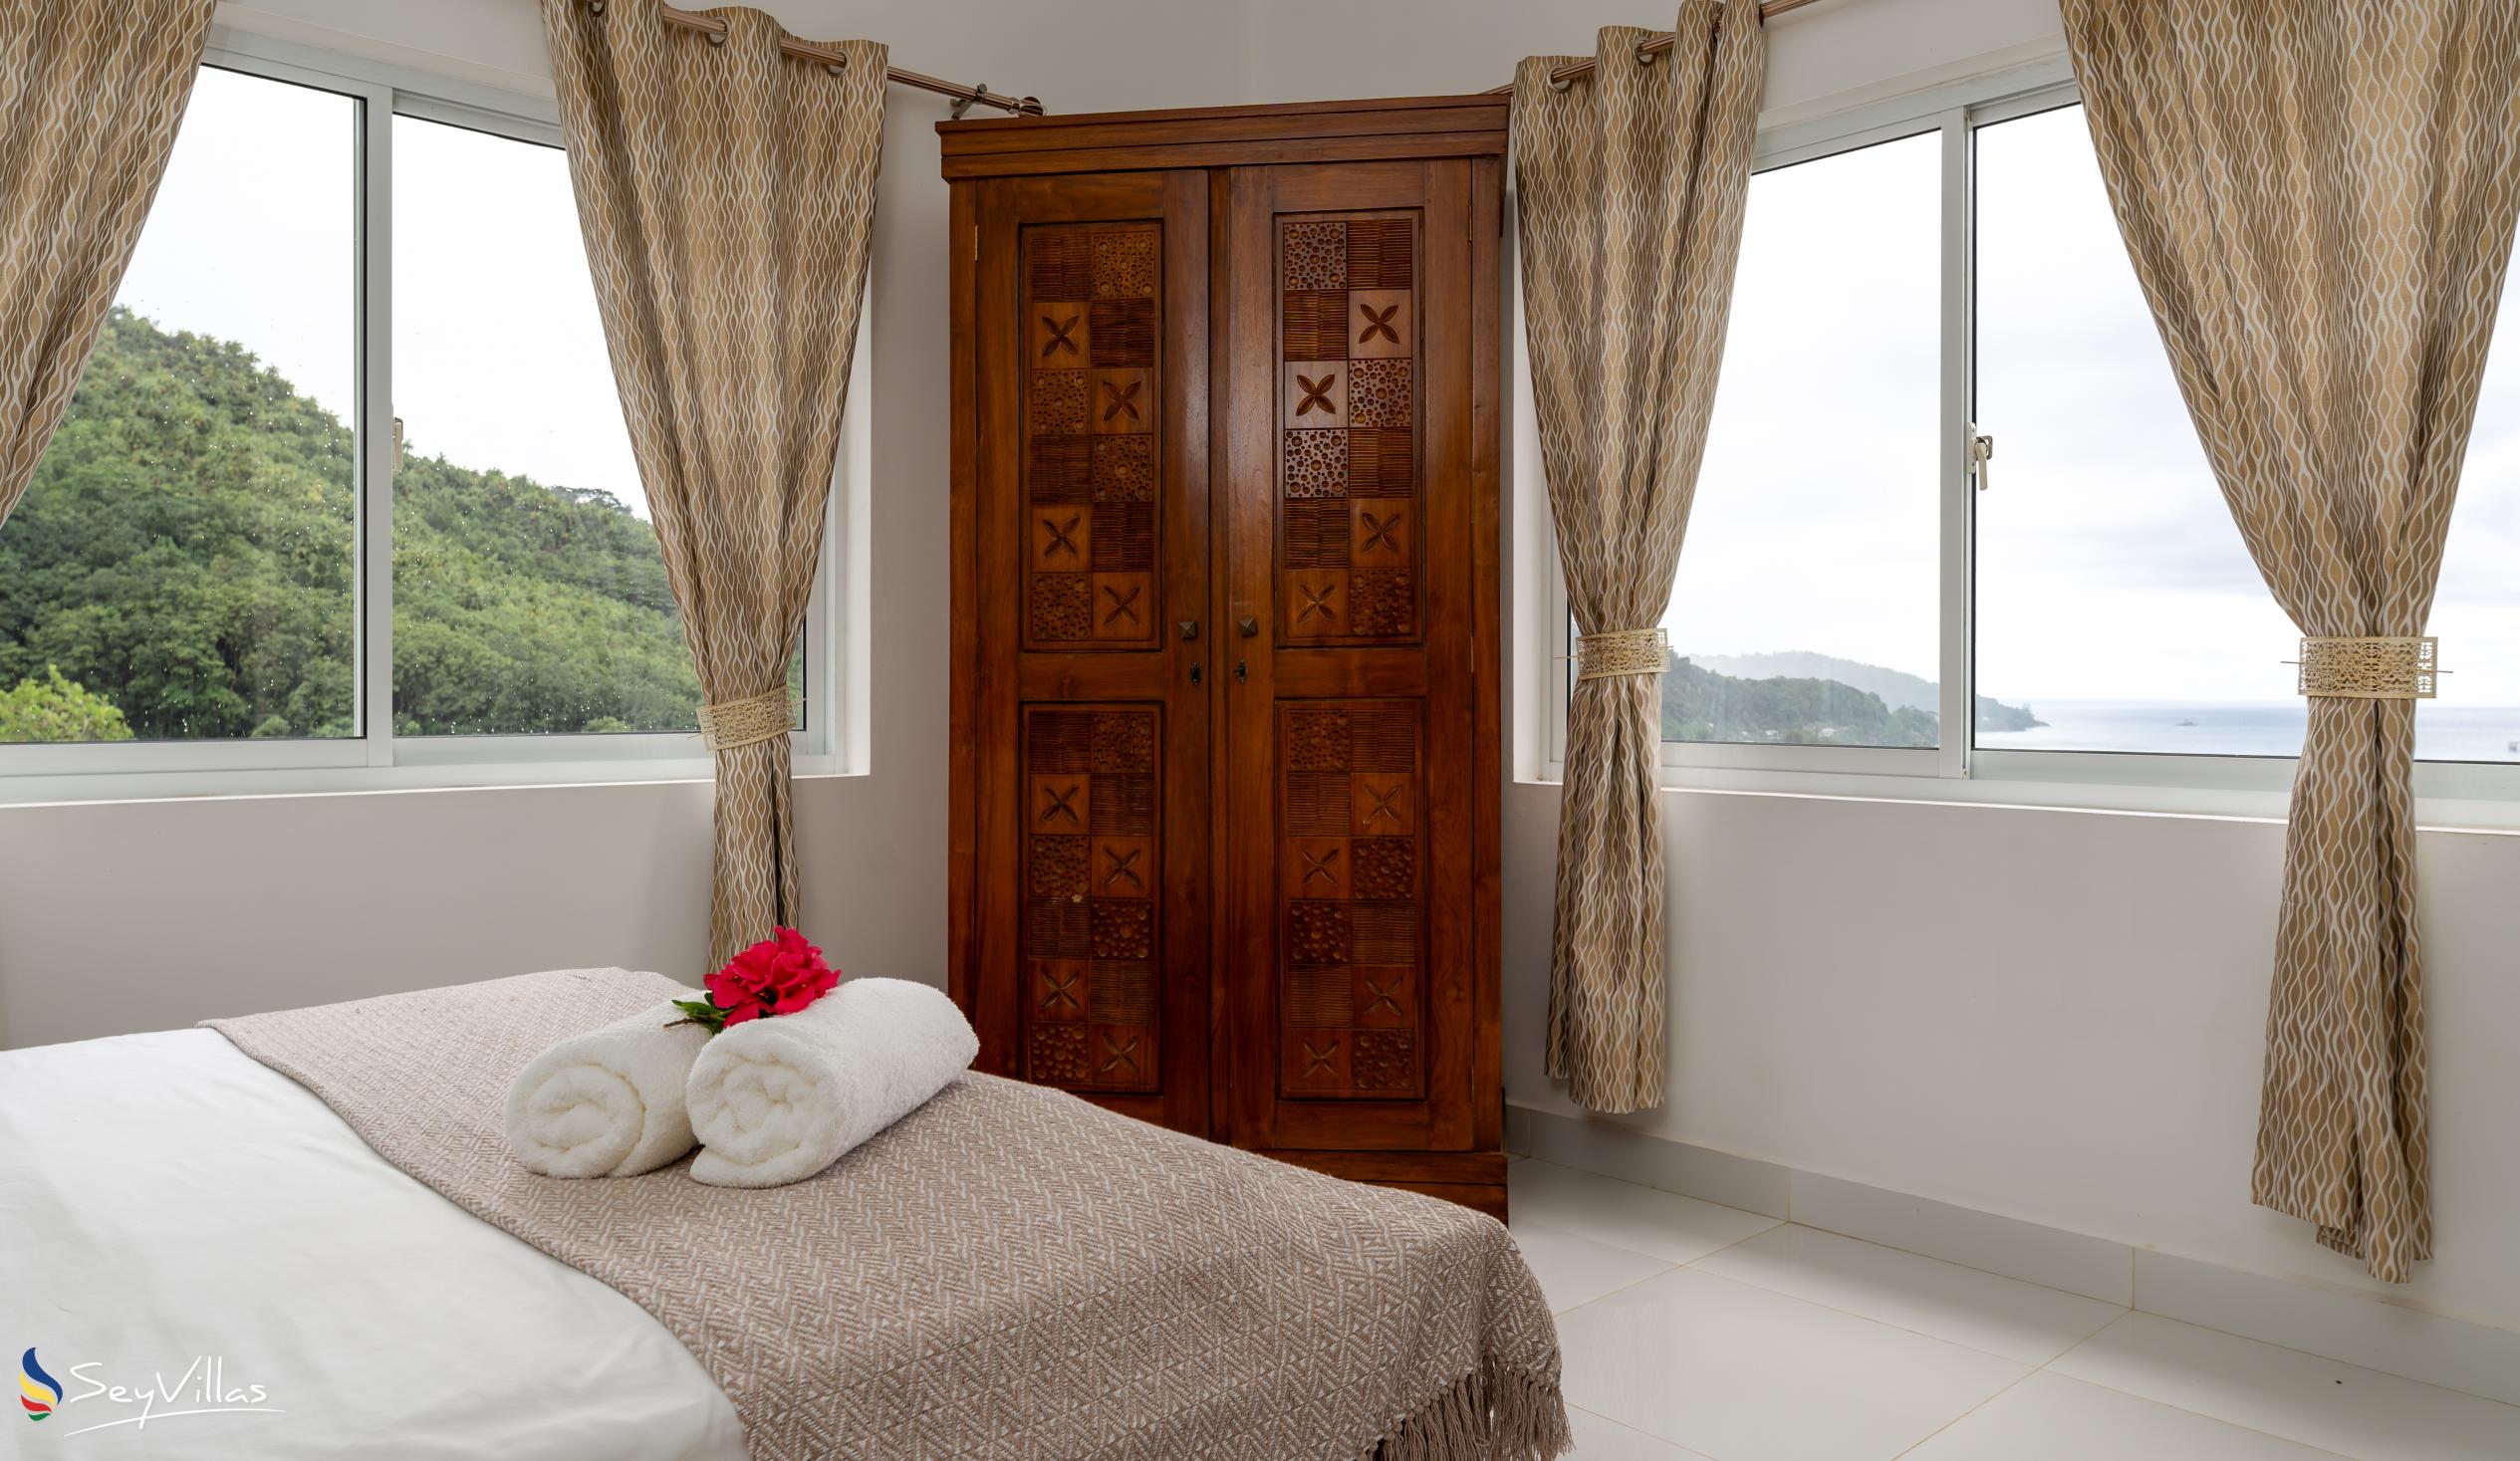 Foto 50: Cella Villa - Appartamento con 2 camere - Mahé (Seychelles)